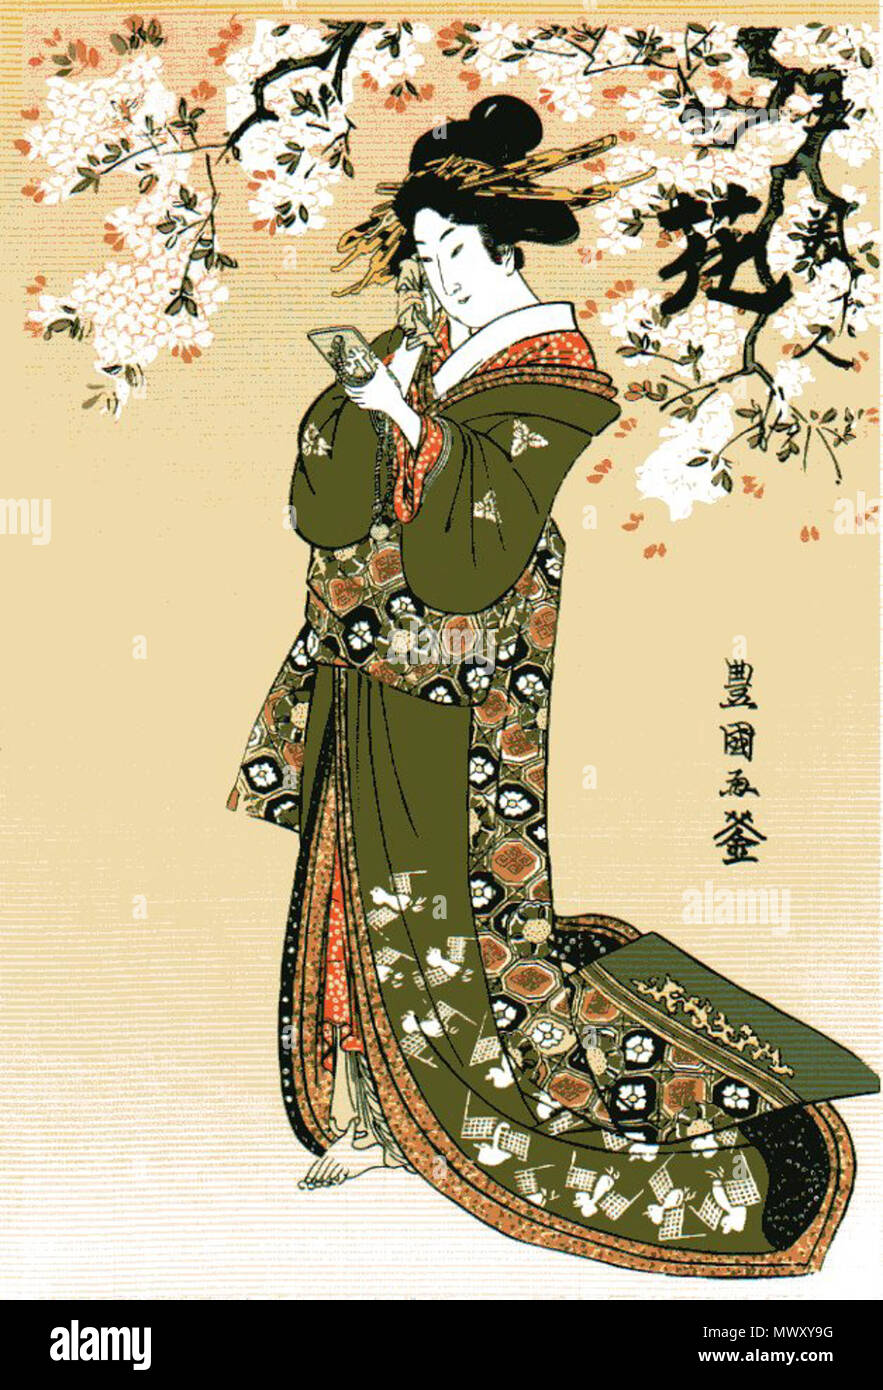 . Englisch: in Computer am 1. Mai 2010 gescannt. späten Japanischen Edo Ära: 1800. 624 Utagawa Toyokuni Utagawa Toyokuni ukiyo-e Holzschnitt Stockfoto